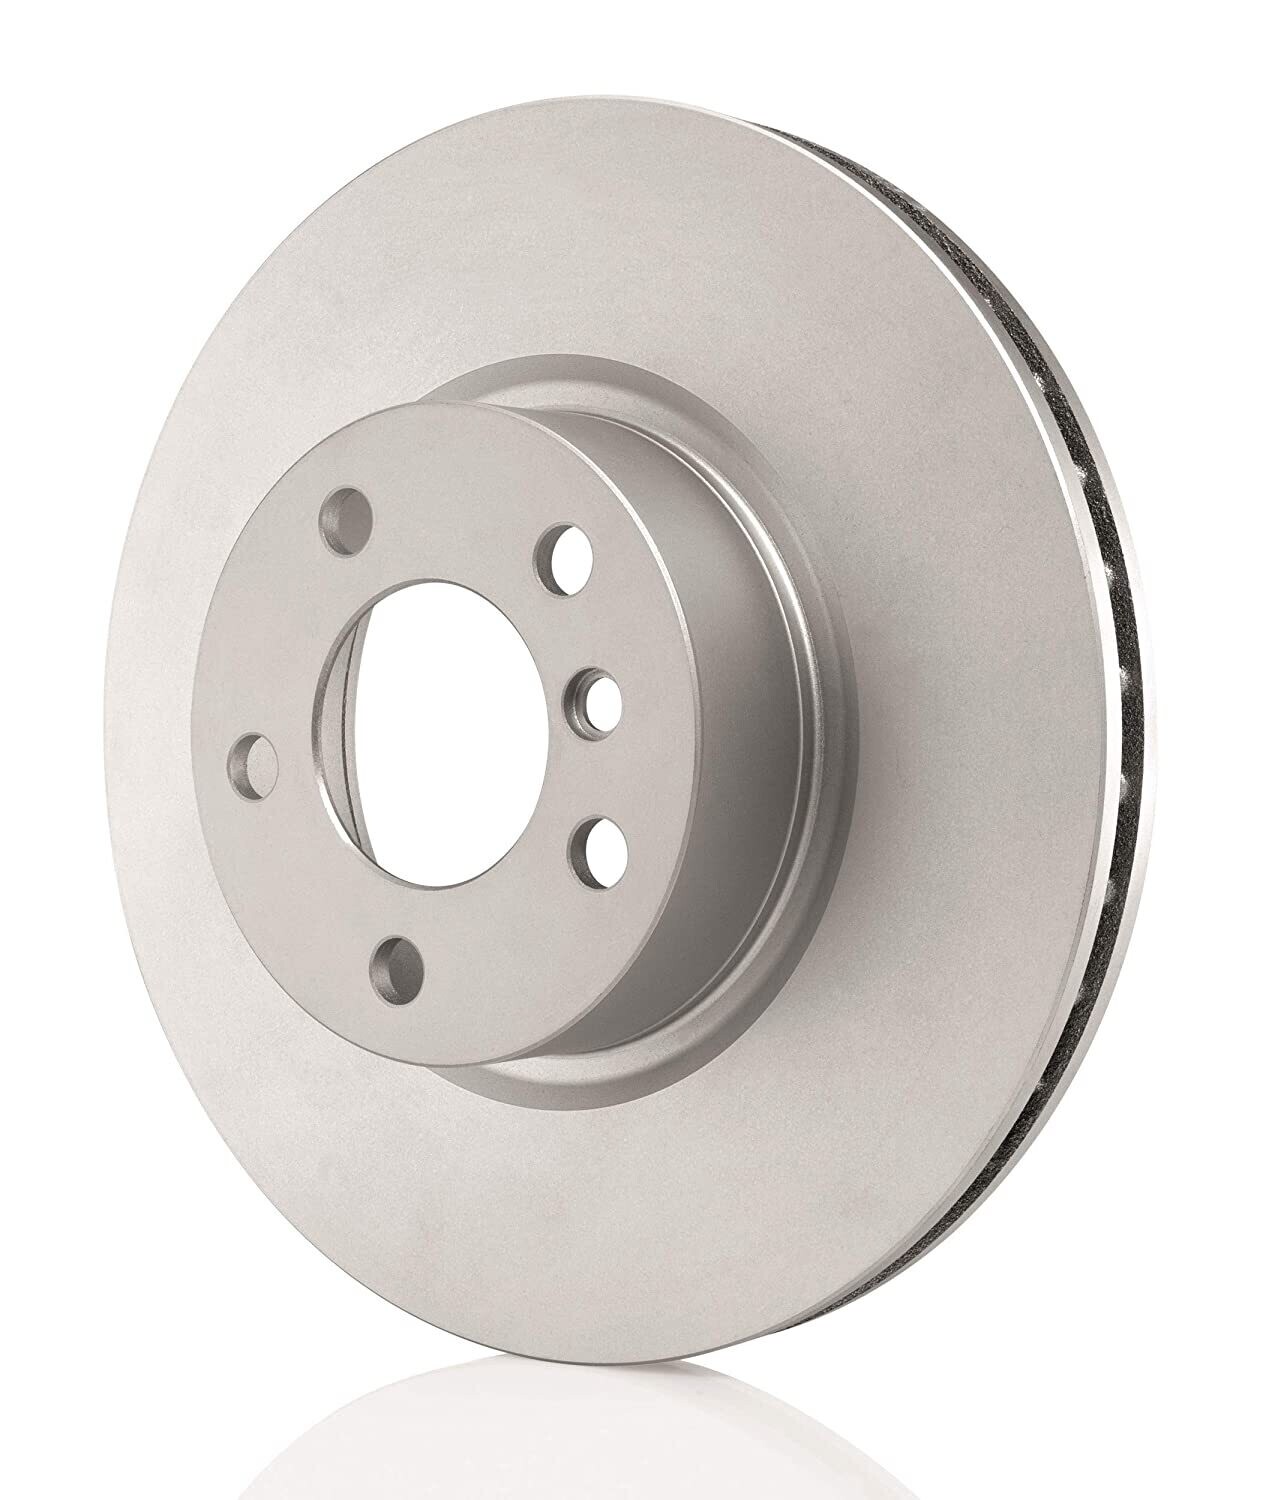 Bosch Brake Disc / Rotor for Mahindra Bolero - BC F002H23901